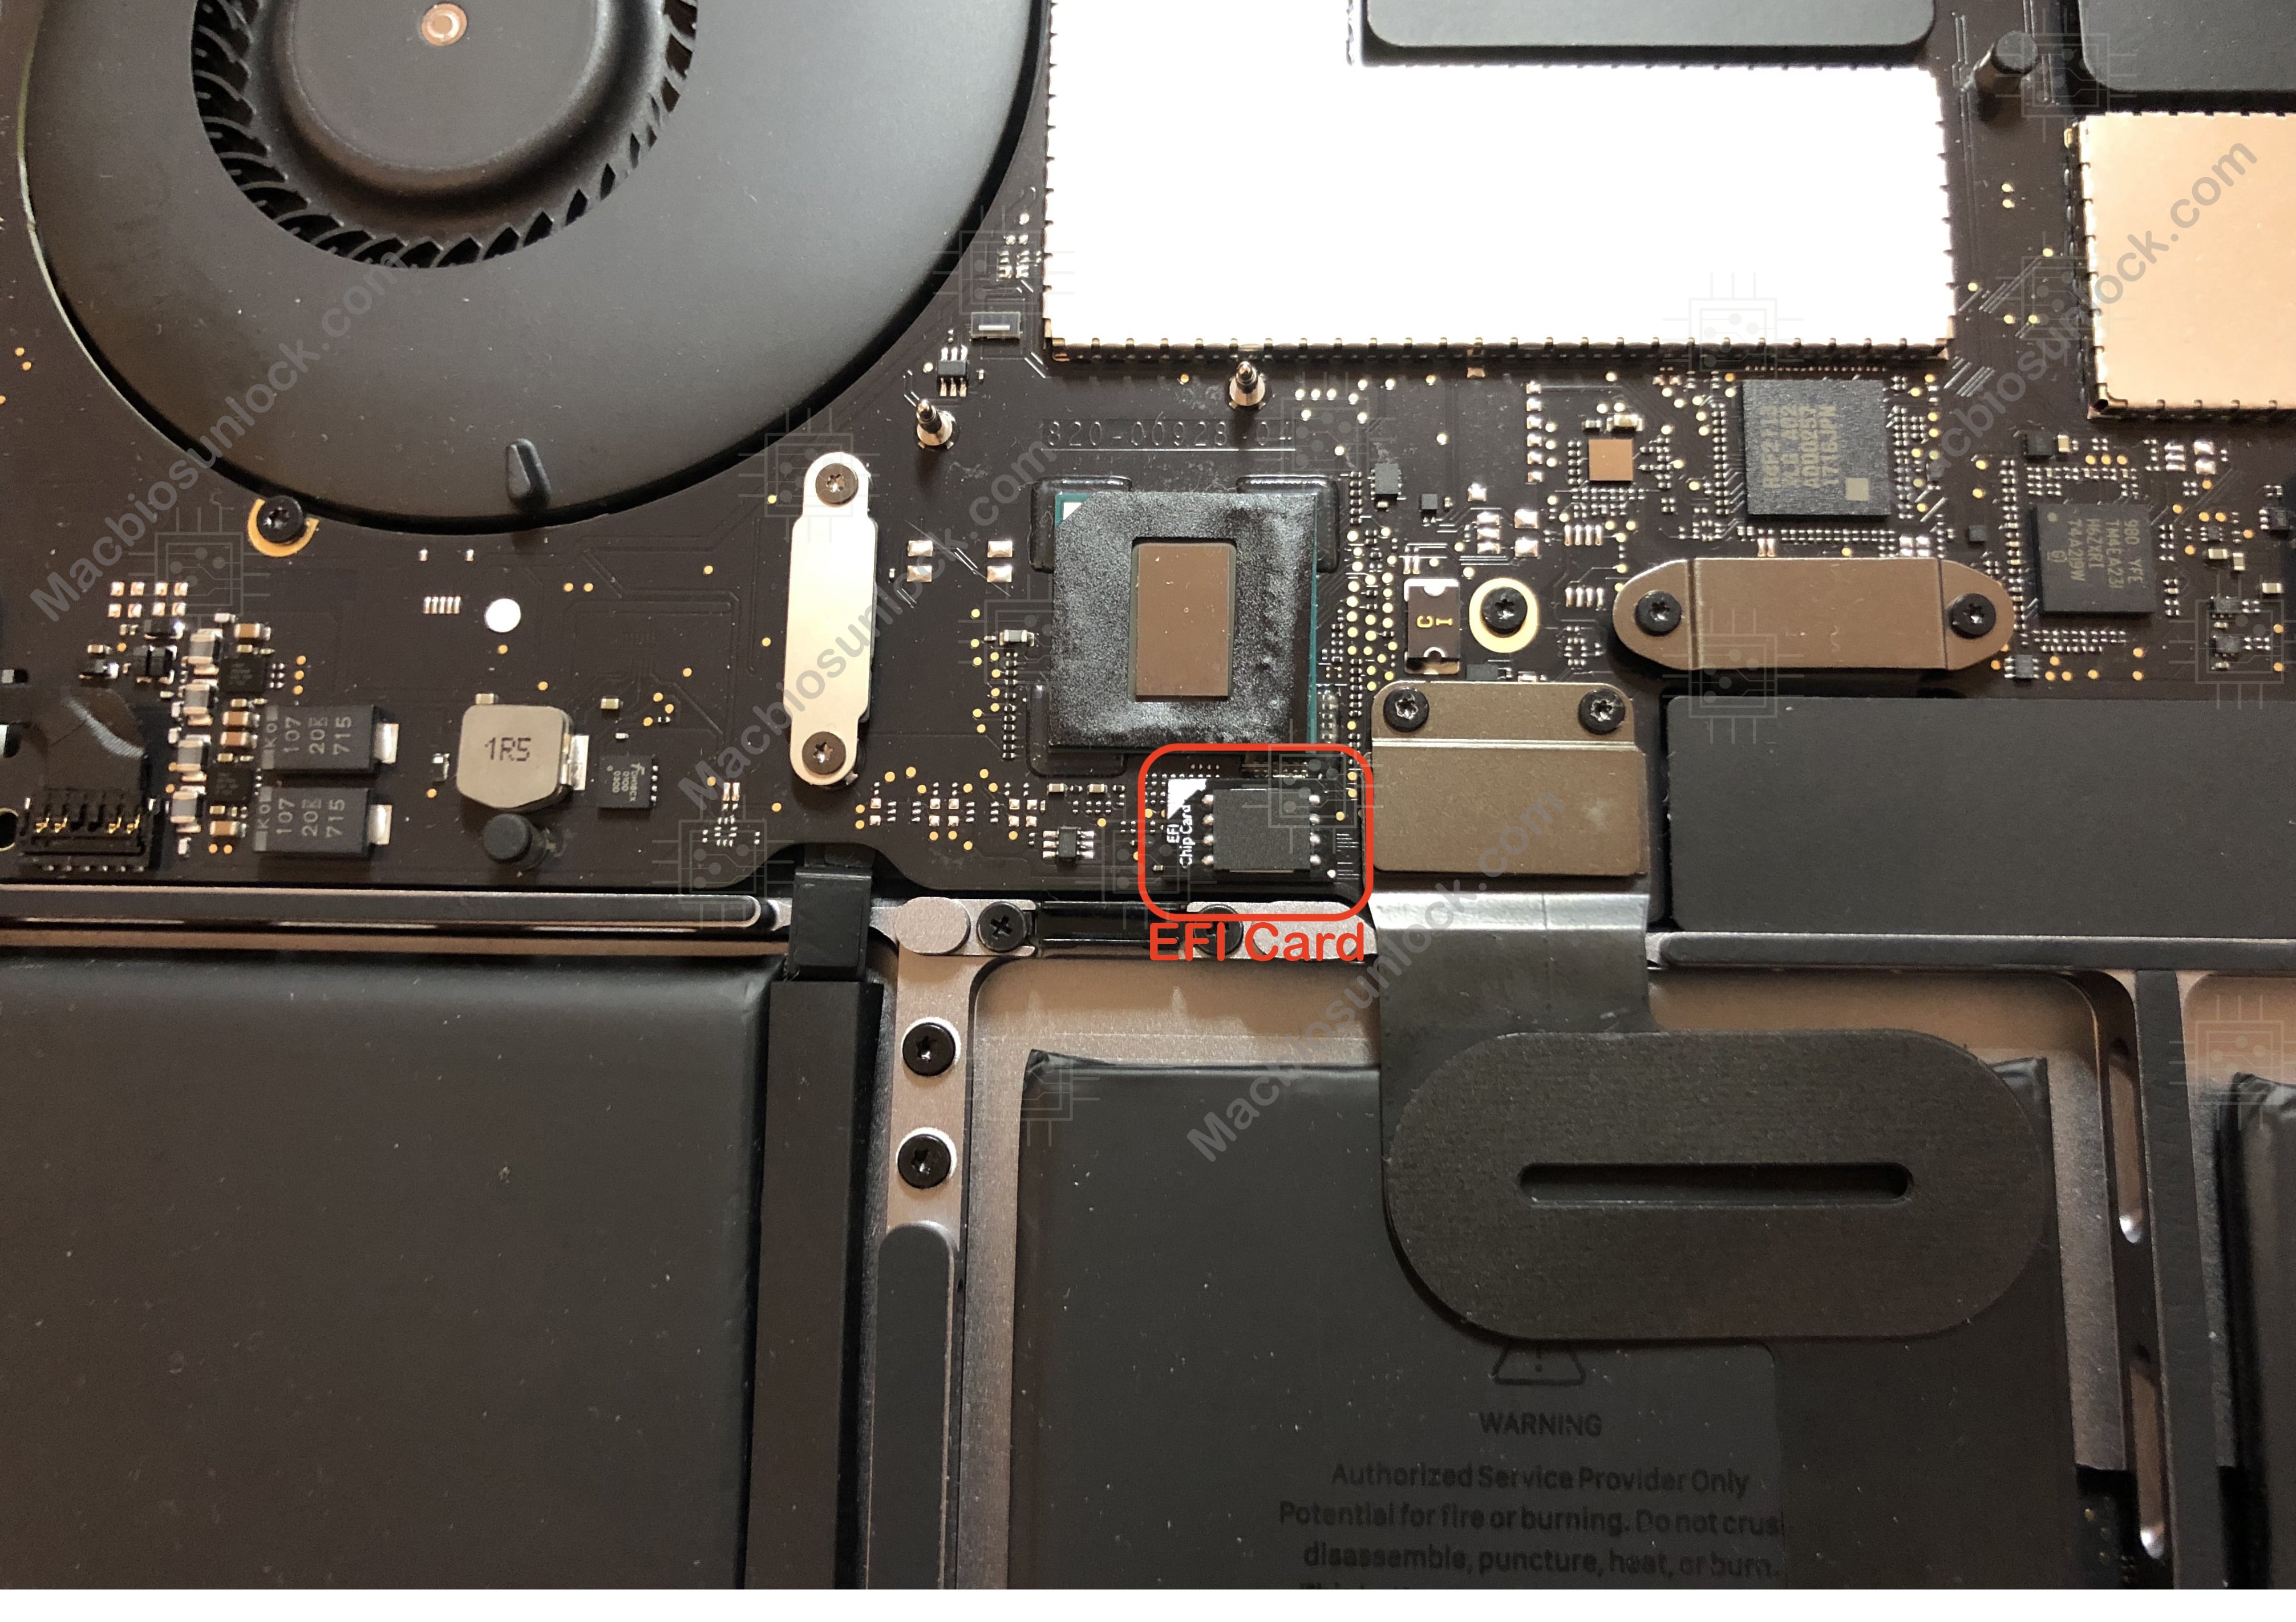 Unlock EFI iCloud MDM MacBook 12" A1534 2015-2017 EMC 2746 EMC 2991 EMC 3099 